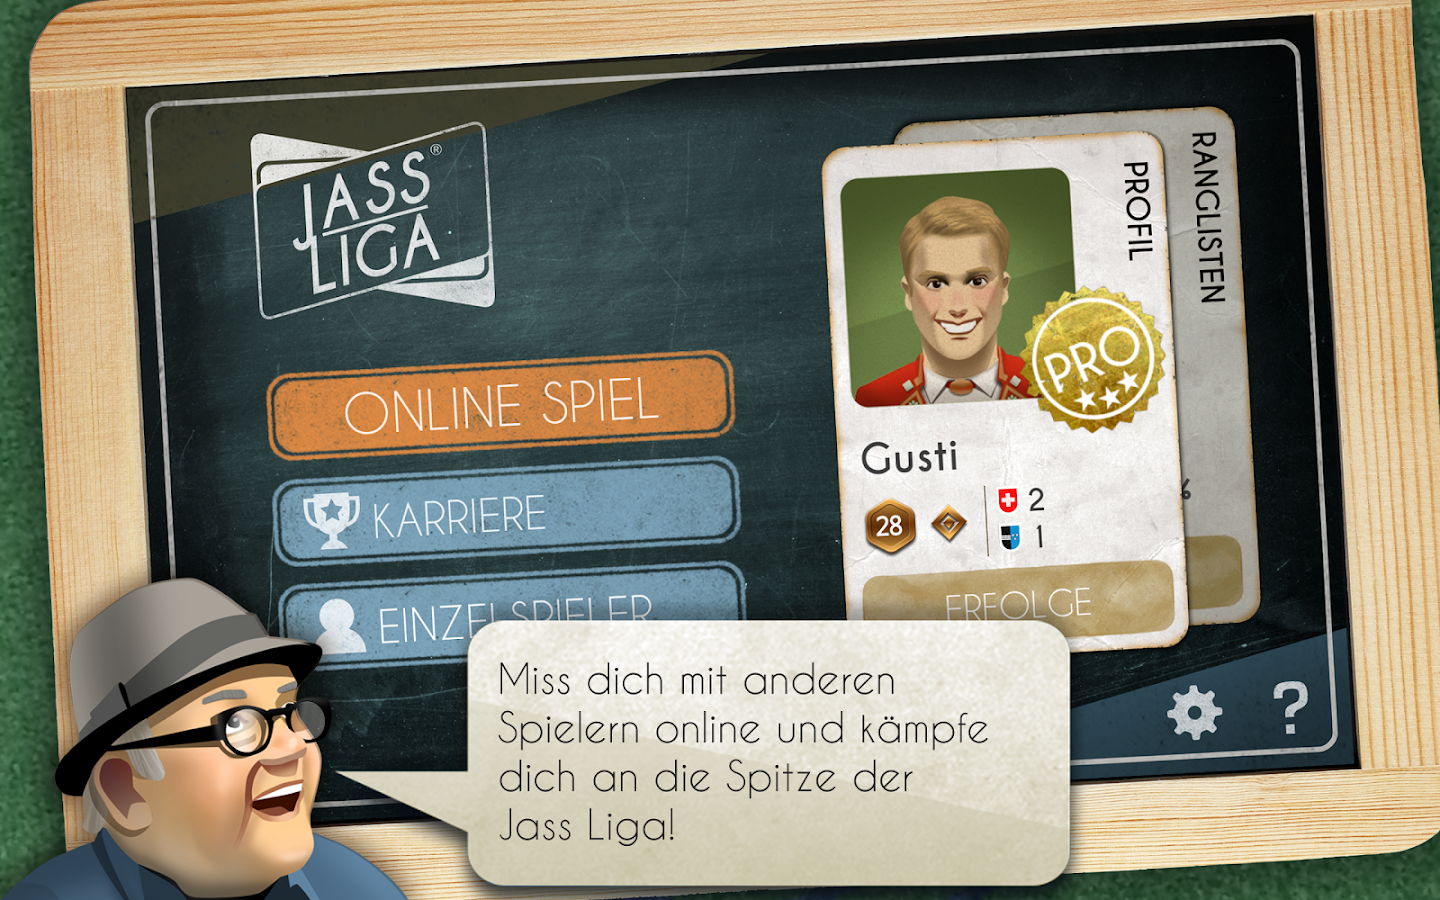    Jass Liga- screenshot  